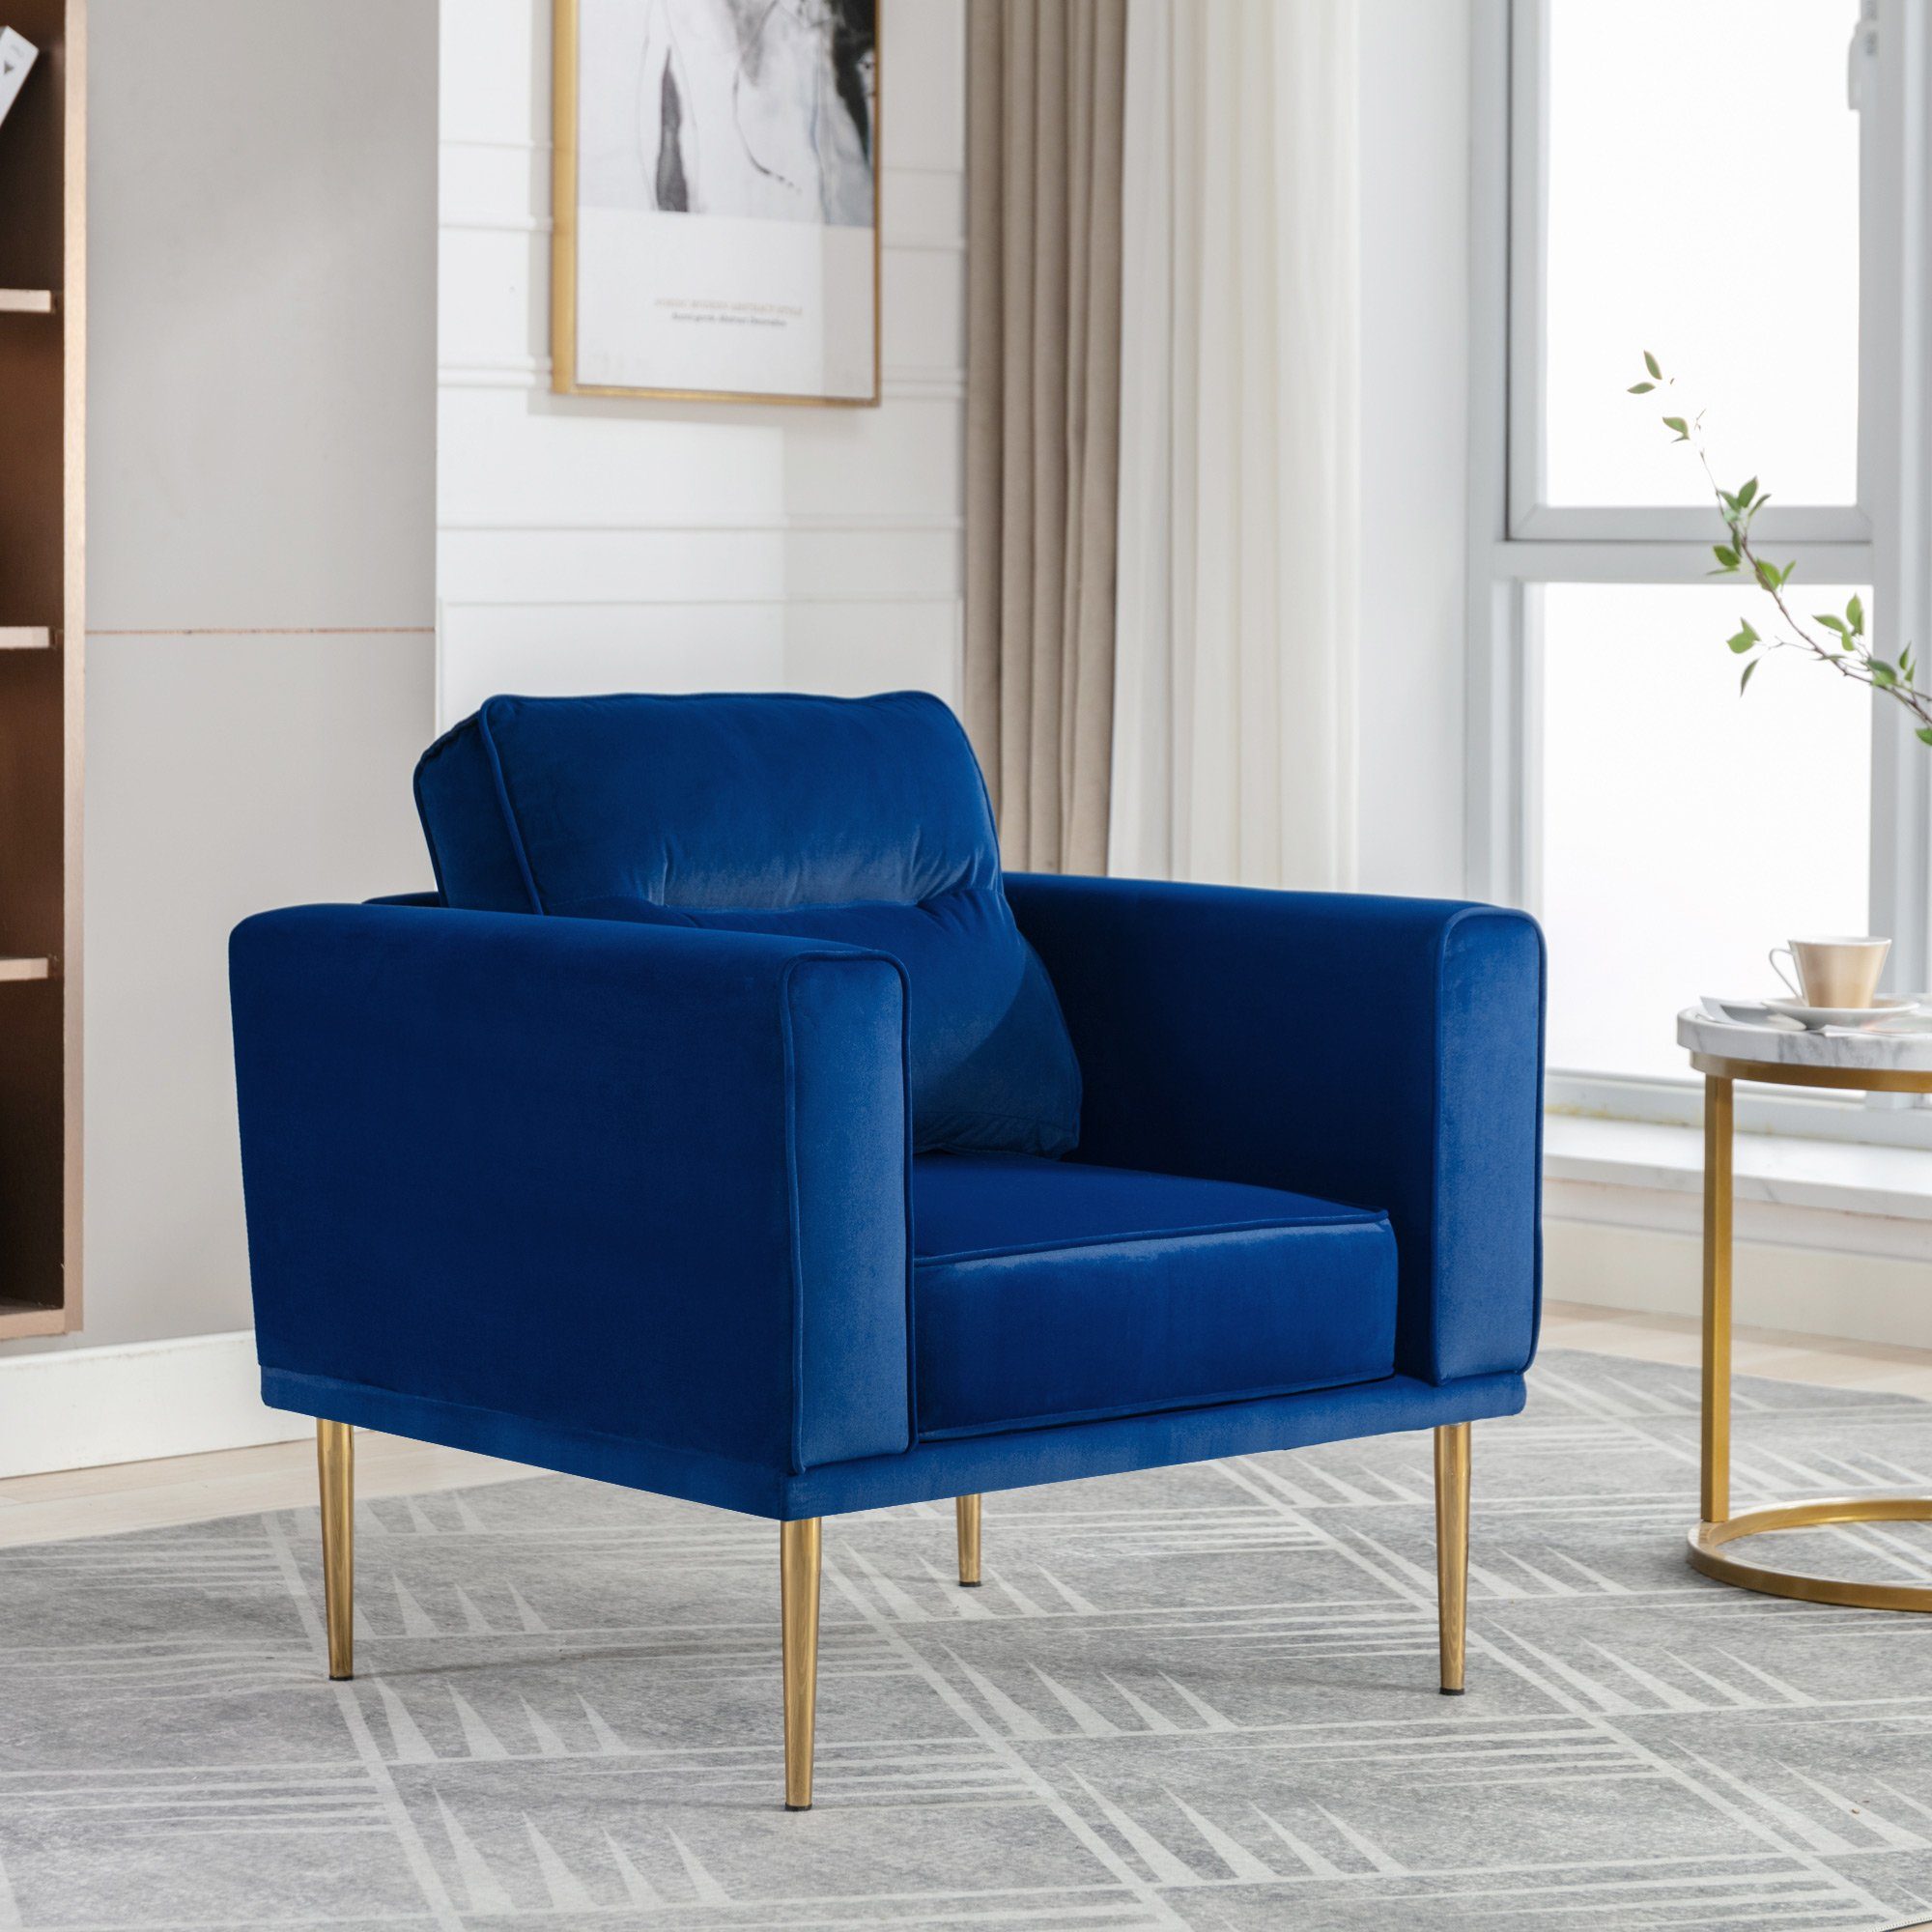 WISHDOR Sessel Relaxsessel, Relaxstuhl, Fernsehsessel, Loungesessel, lässiger Sessel (Sessel mit Polster und Sitzkissen), moderner einfacher Samtstuhl blau